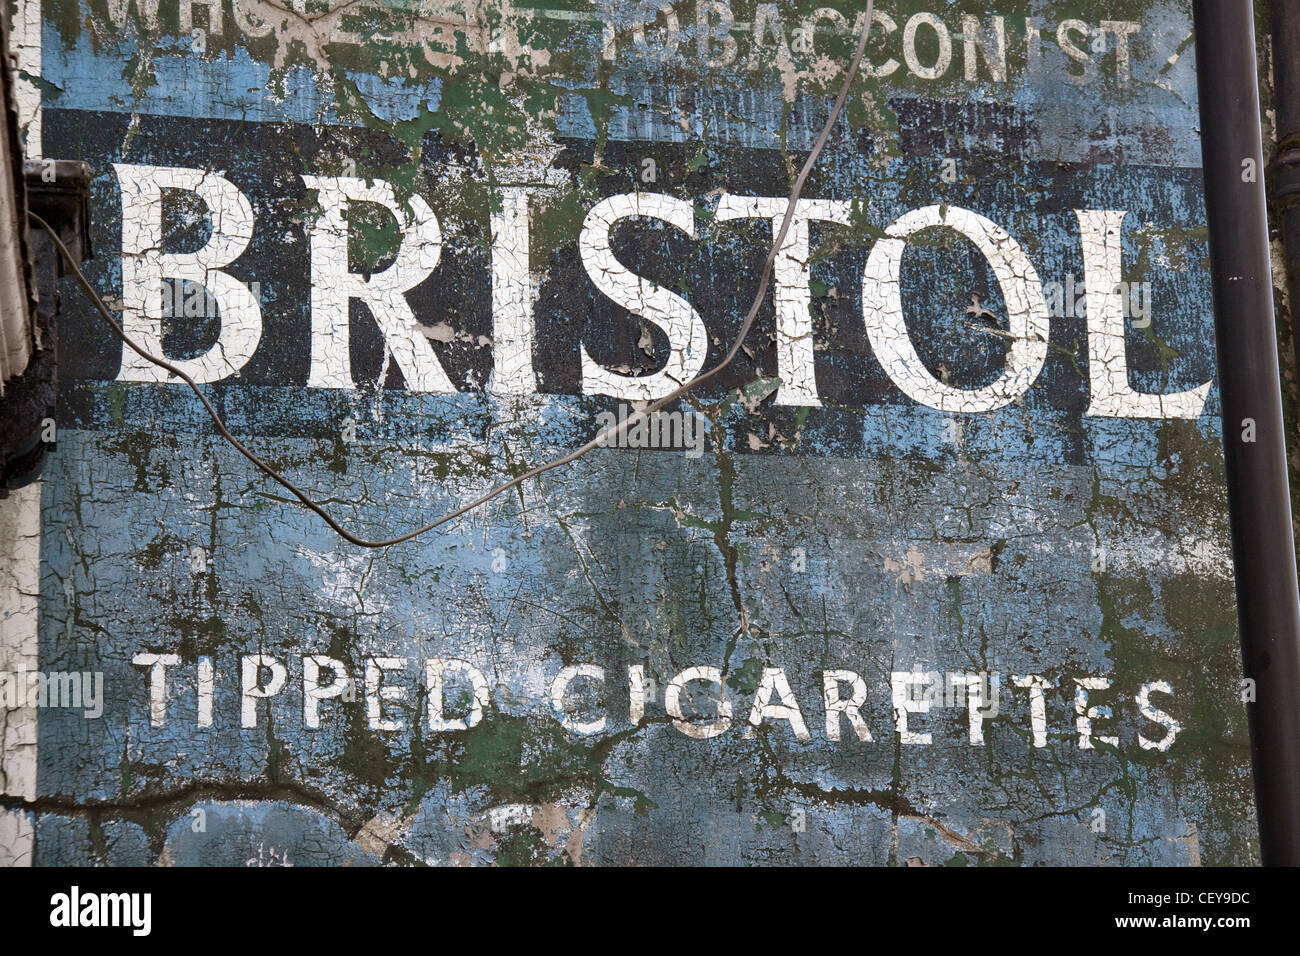 Bristol gekippt Zigaretten Wand historische Werbung von Witton Street, Northwich, Cheshire West und Chester, England CW9 5QU Stockfoto